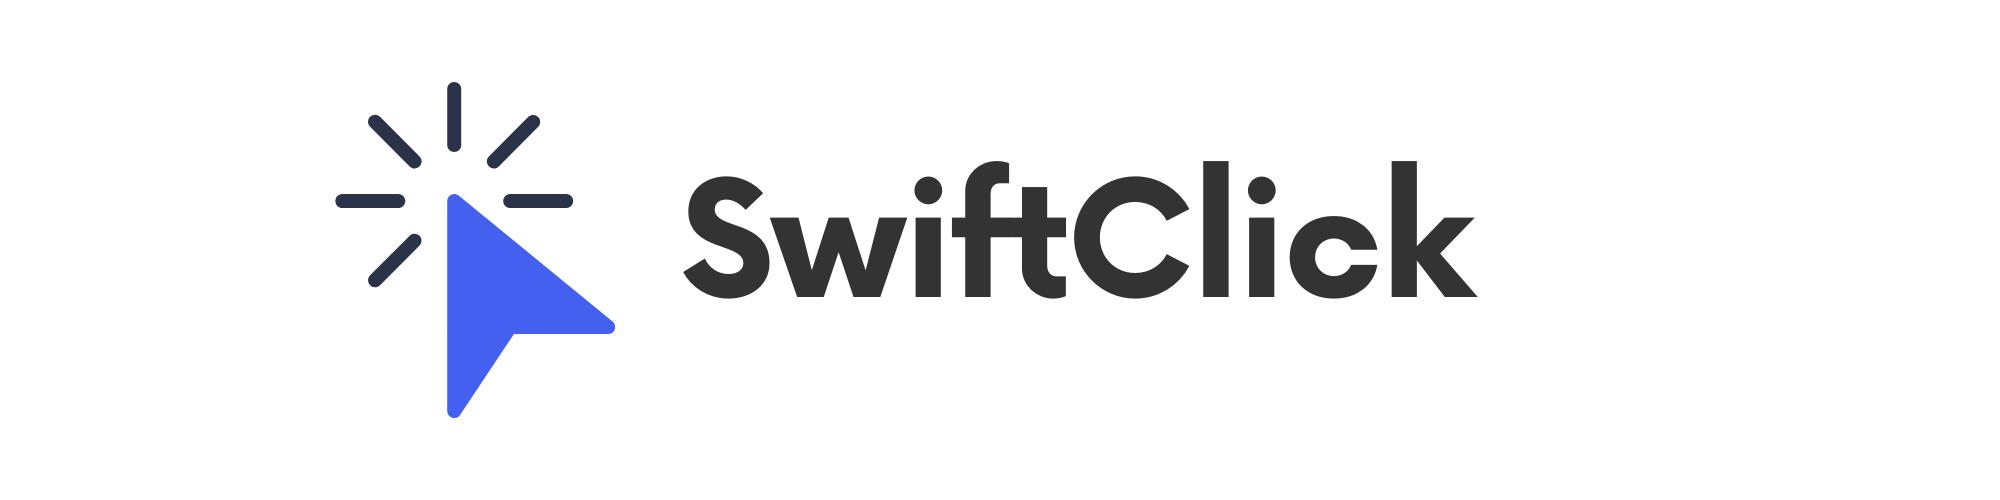 SwiftClick Inc.